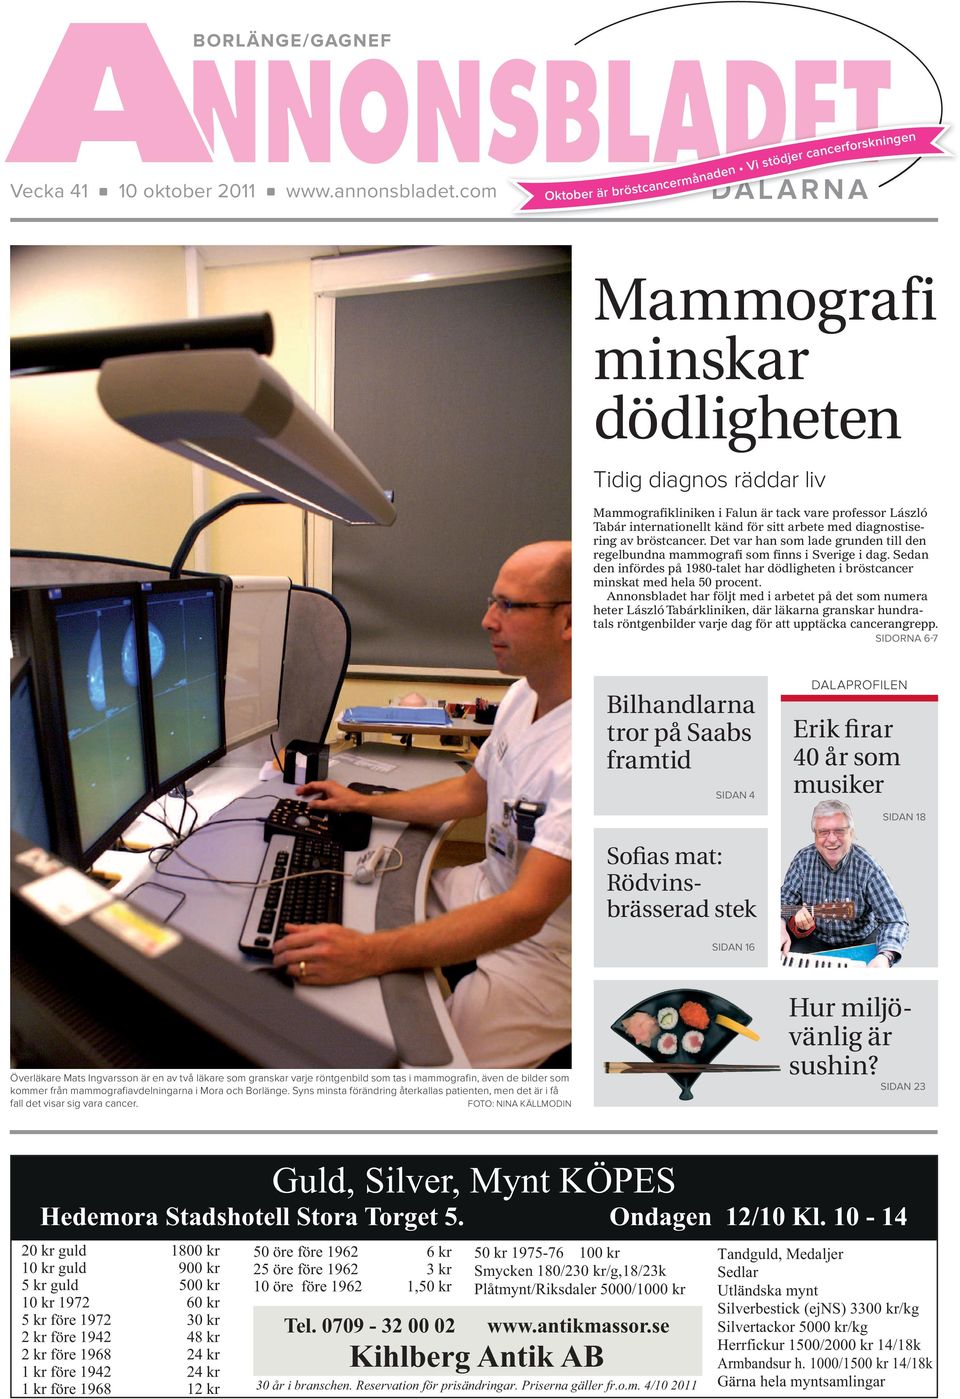 känd för sitt arbete med diagnostisering av bröstcancer. Det var han som lade grunden till den regelbundna mammografi som finns i Sverige i dag.